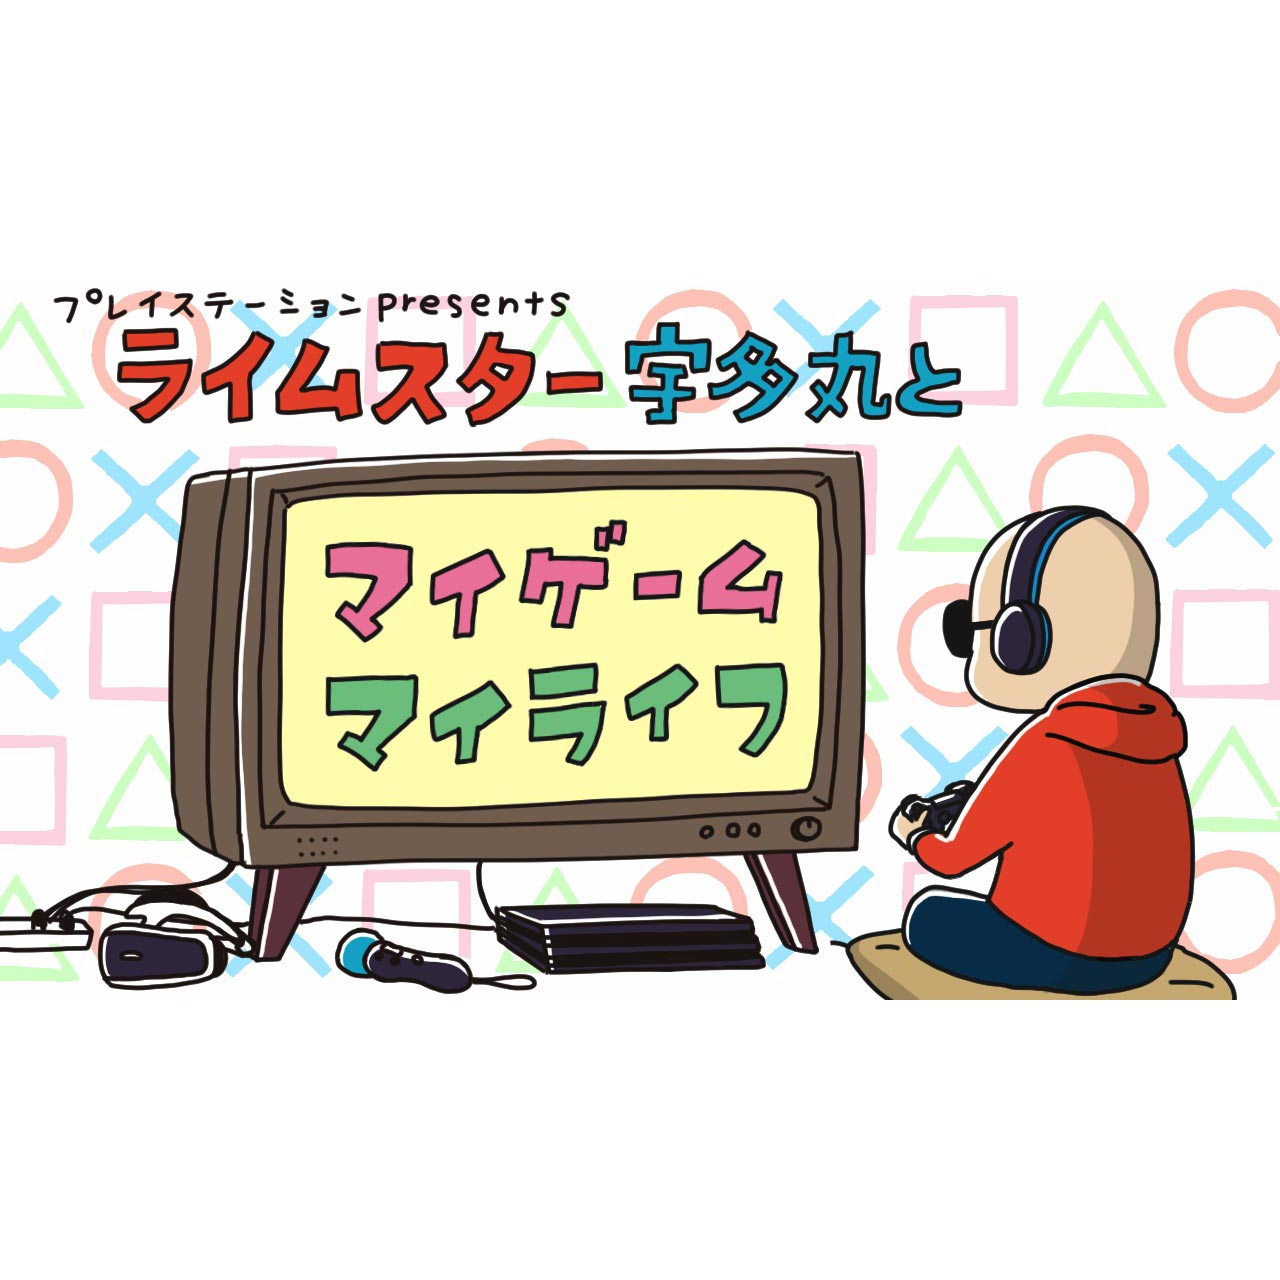 TBSラジオ プレイステーション presents「ライムスター宇多丸とマイゲーム・マイライフ」